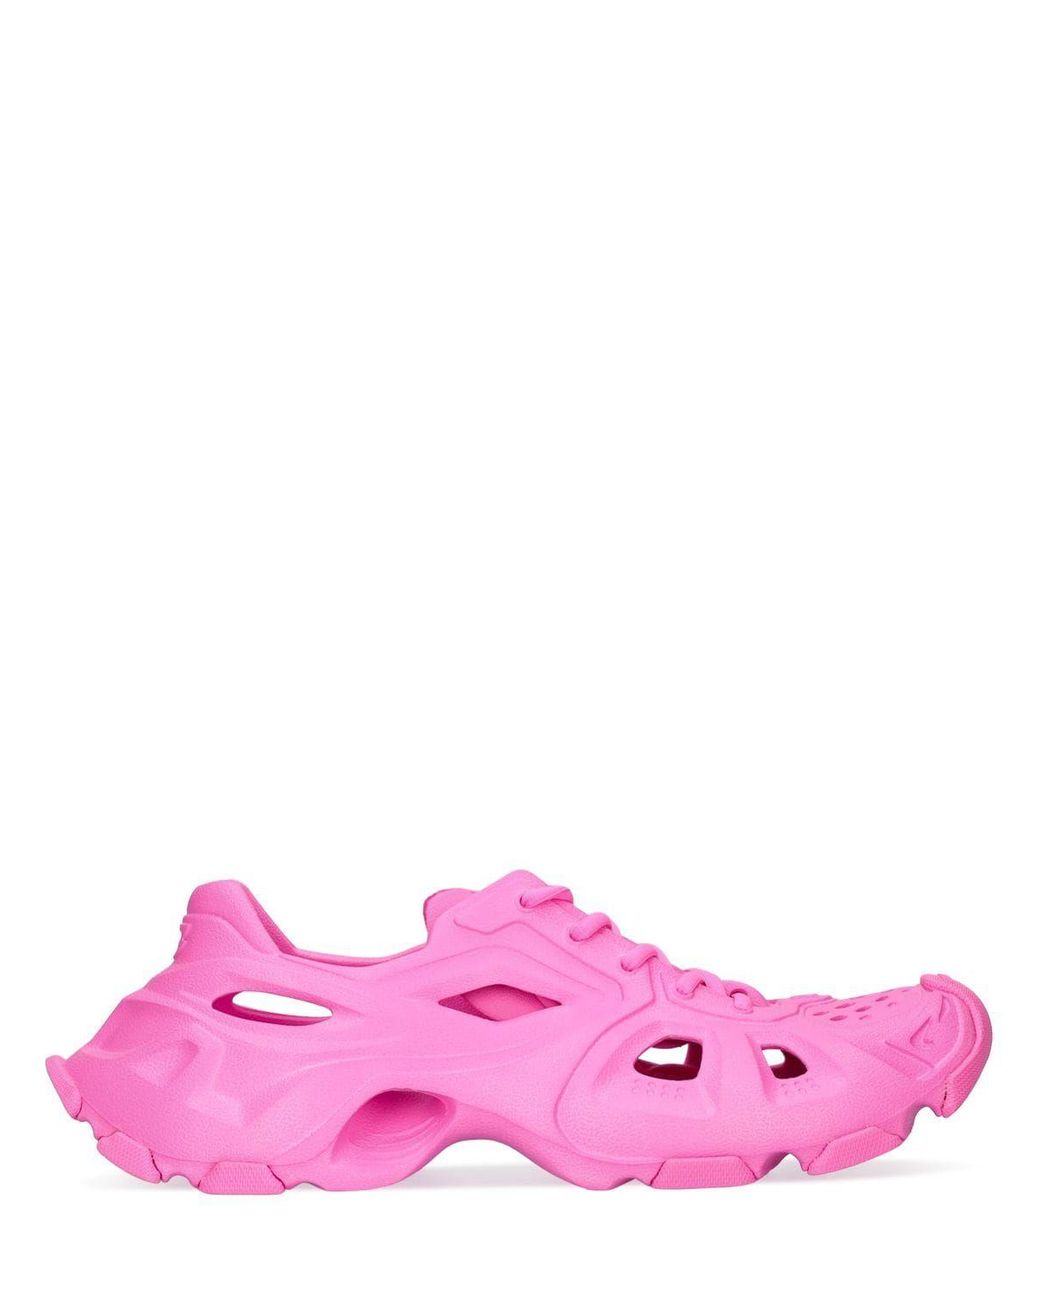 Balenciaga Hd Foam Rubber Sneakers in Pink | Lyst